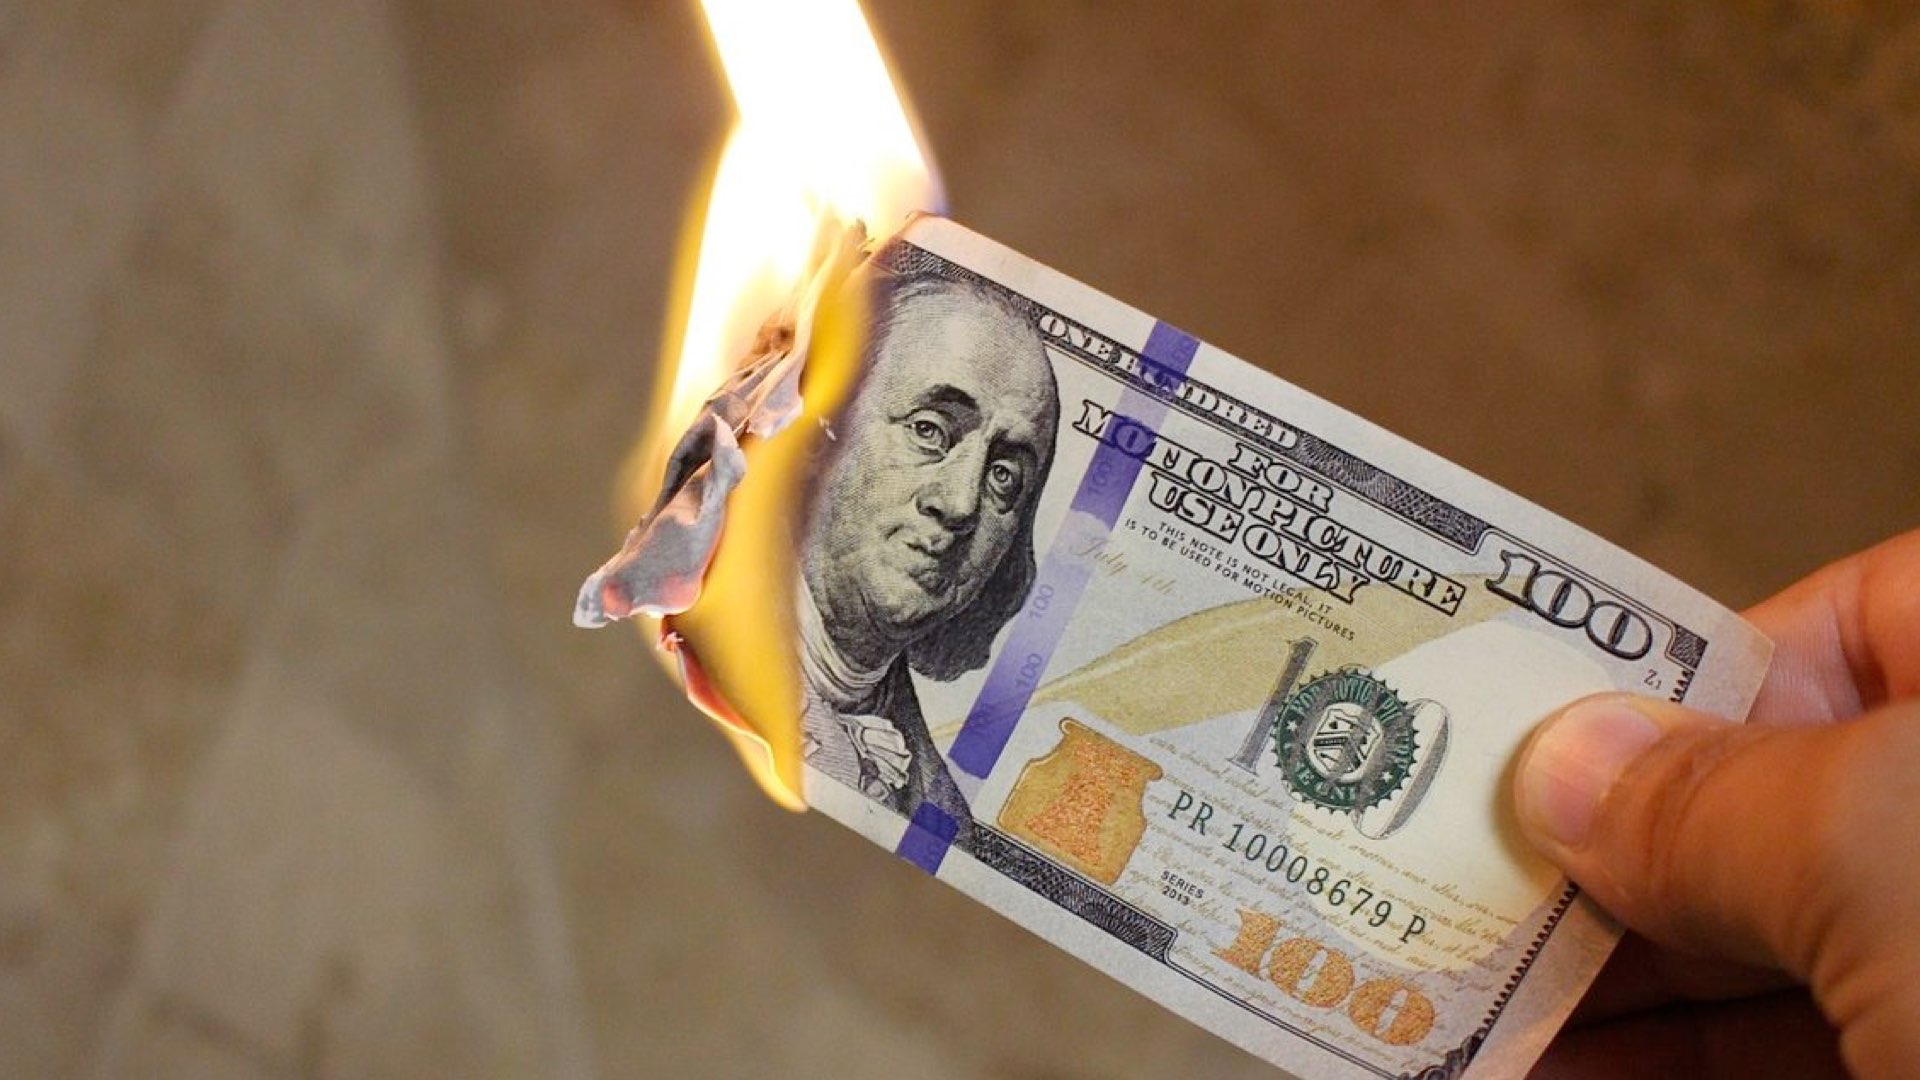 Burning money image